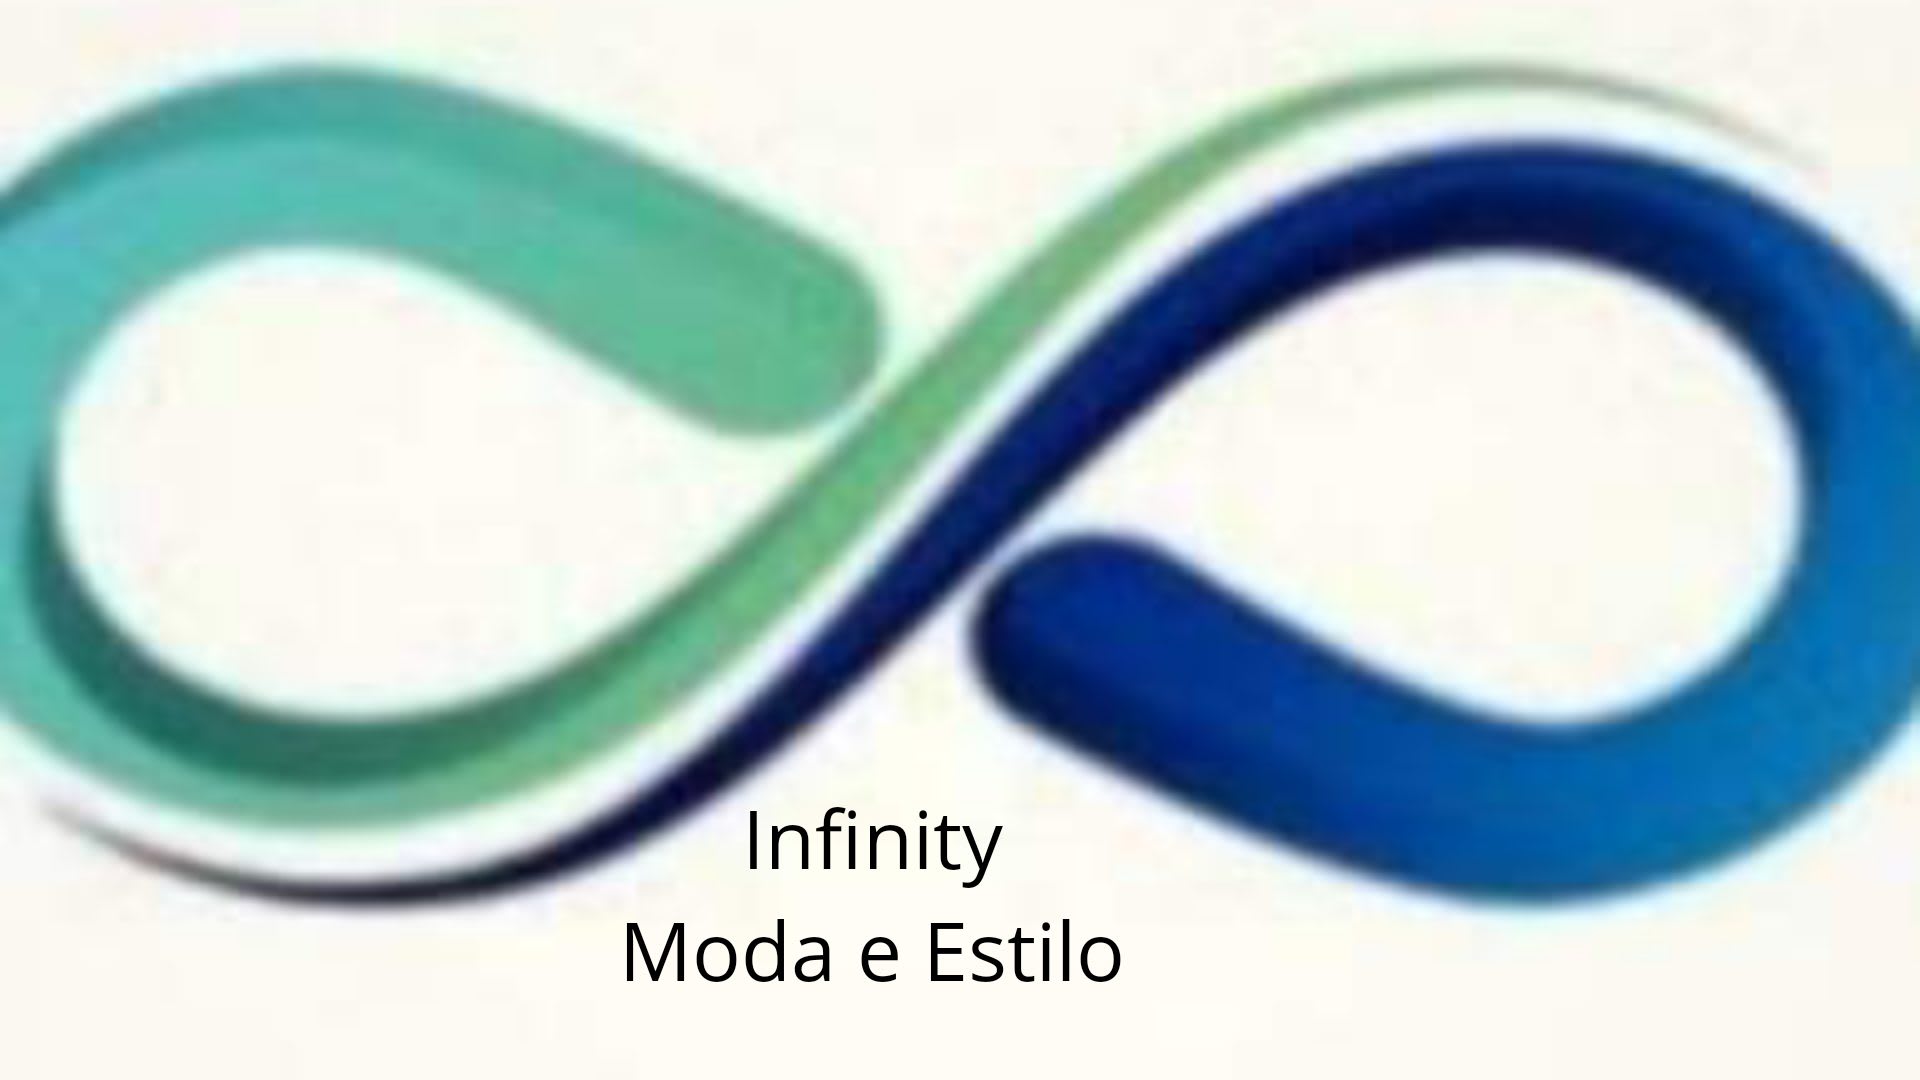 Infinity Moda e Estilo